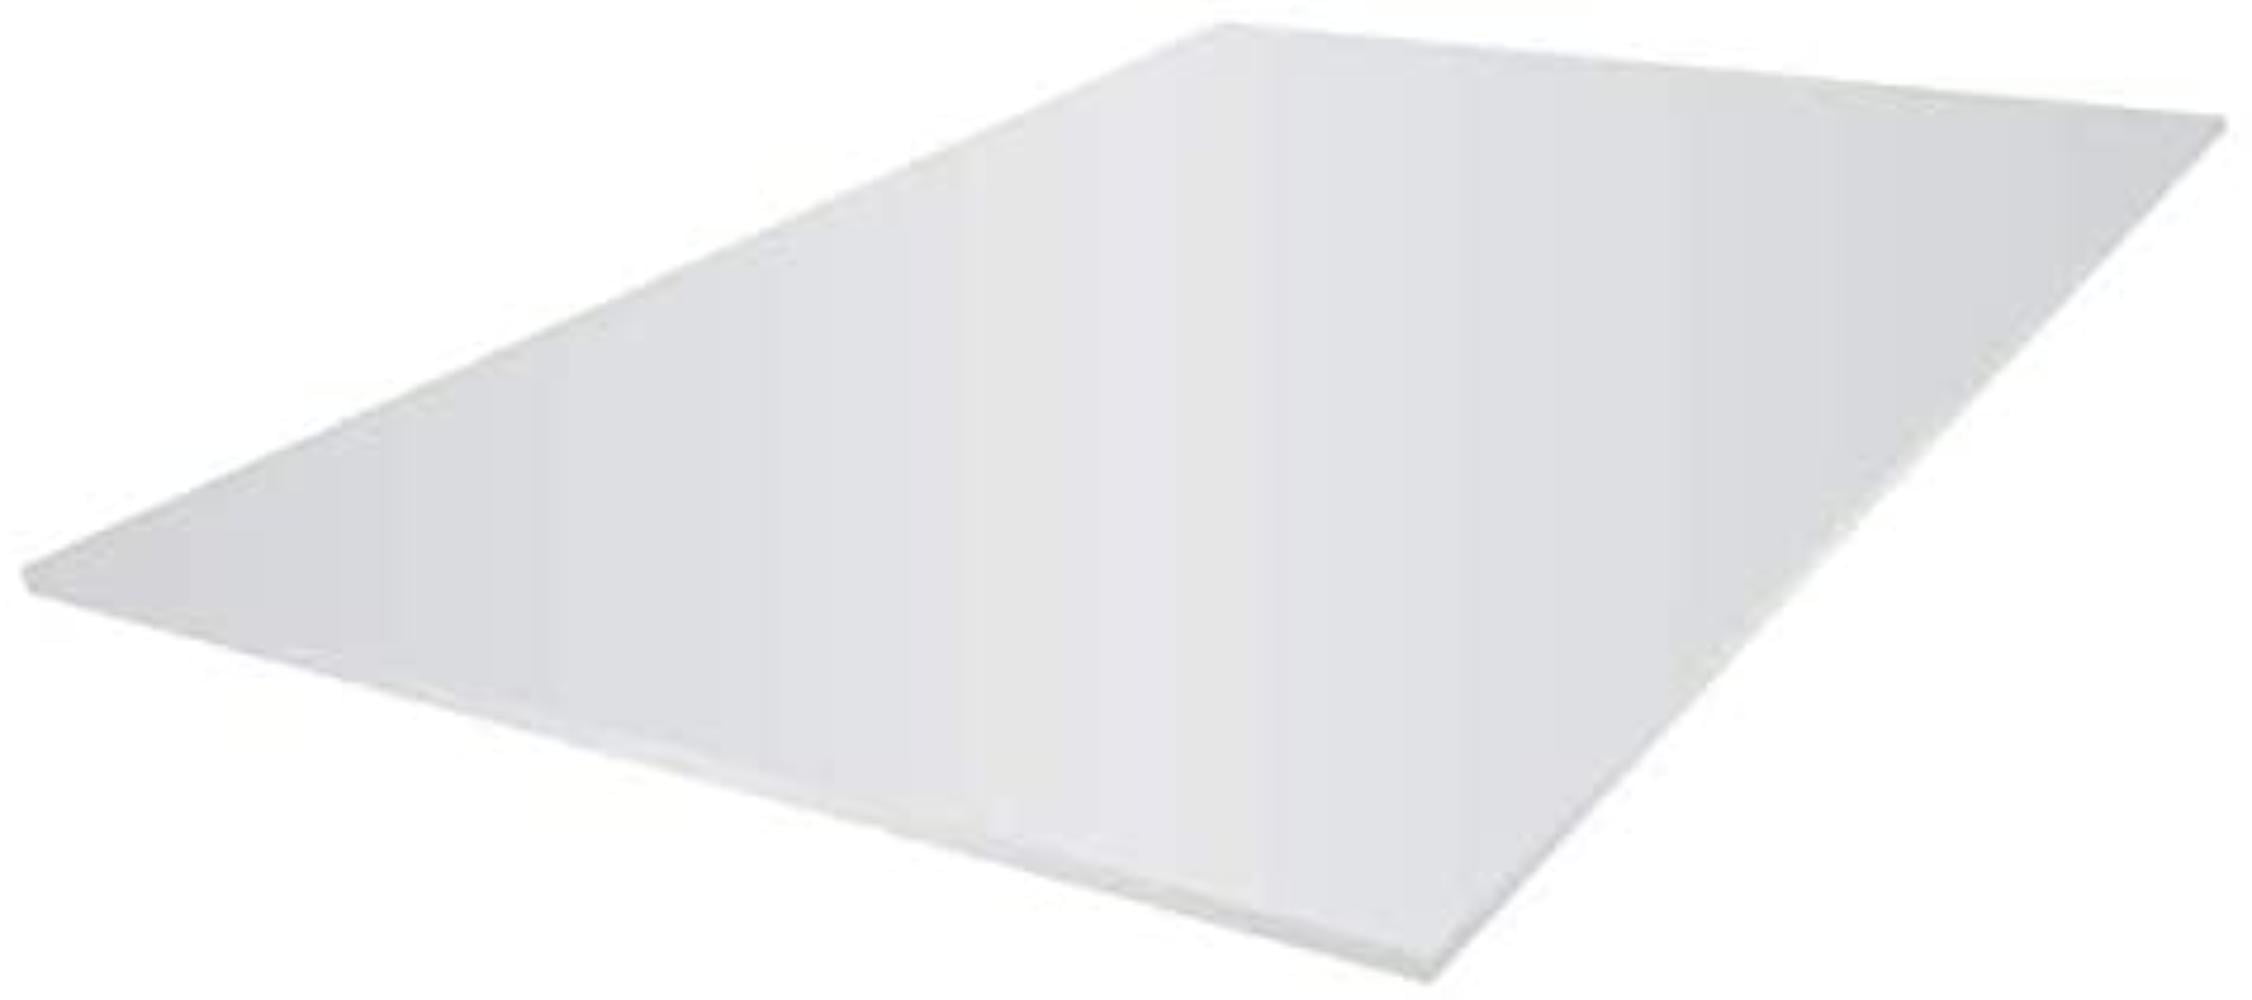 394471 R 30in White x 40in Office Depot Sturdy Board Pack Of 10 Foam Boards 